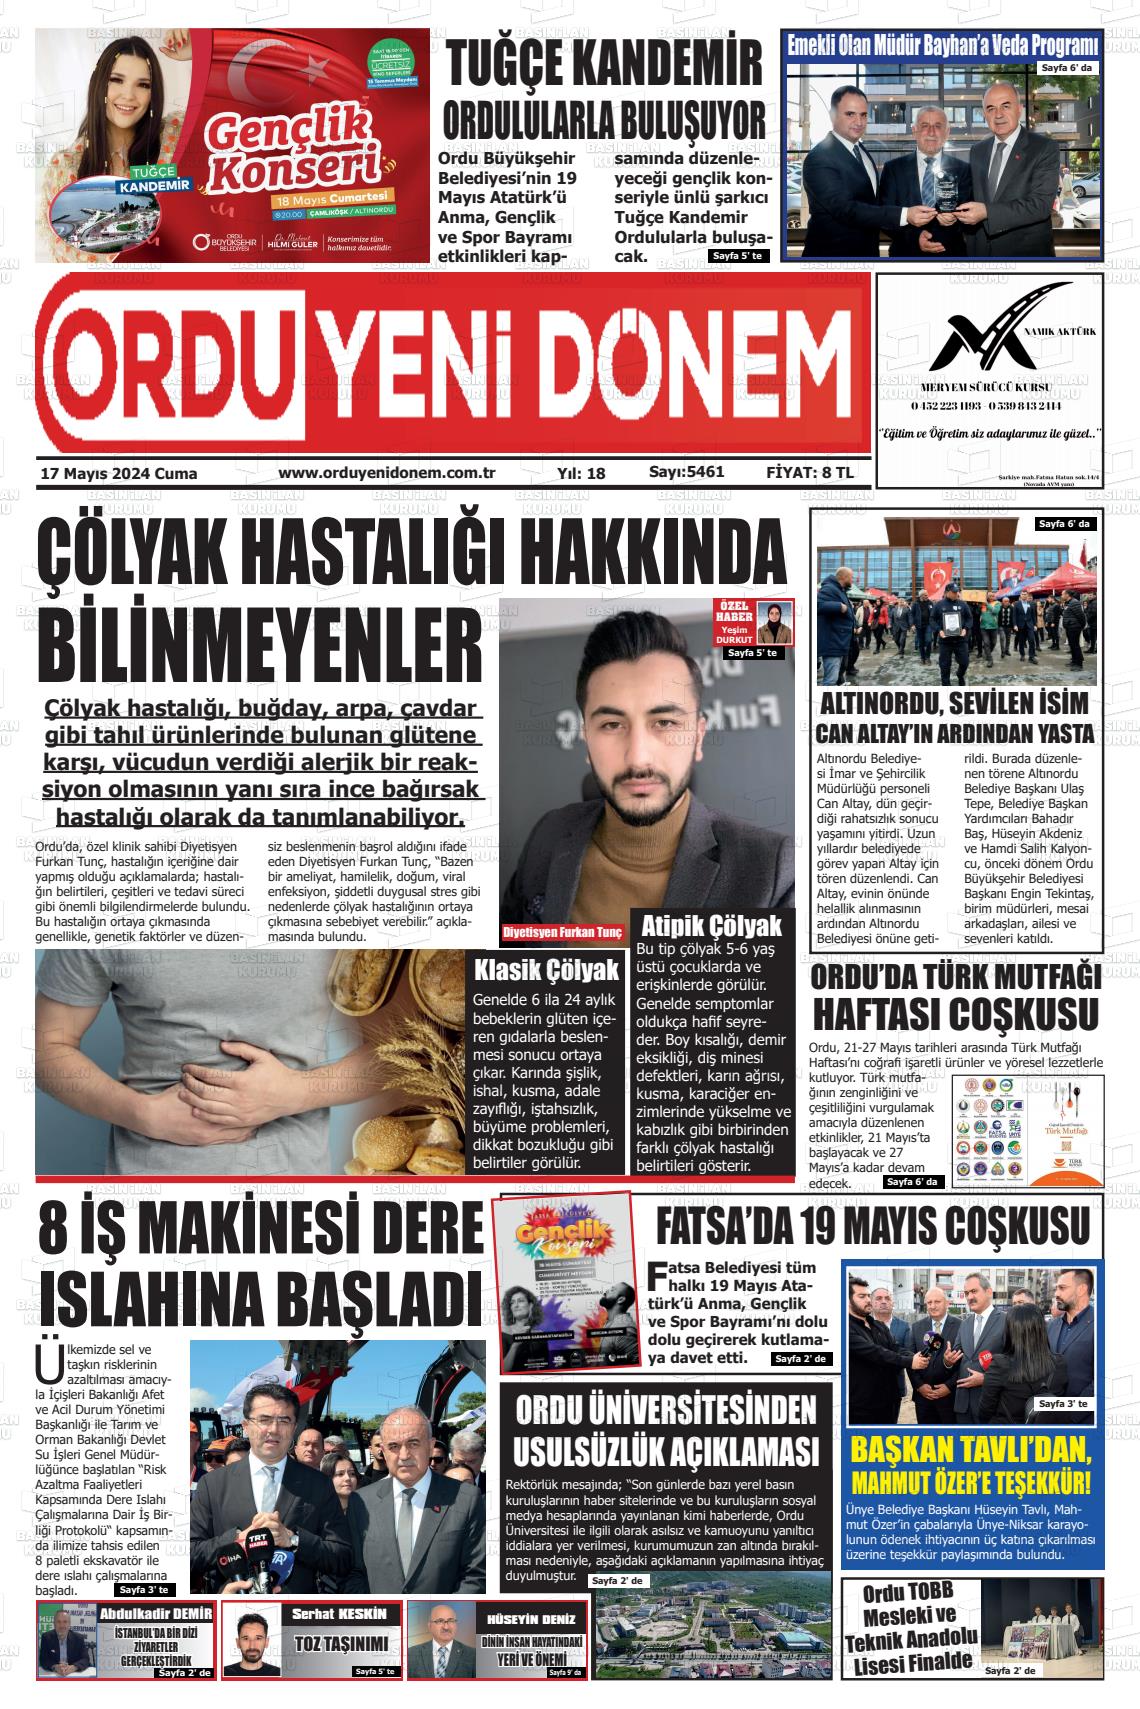 ORDU YENİ DÖNEM Gazetesi